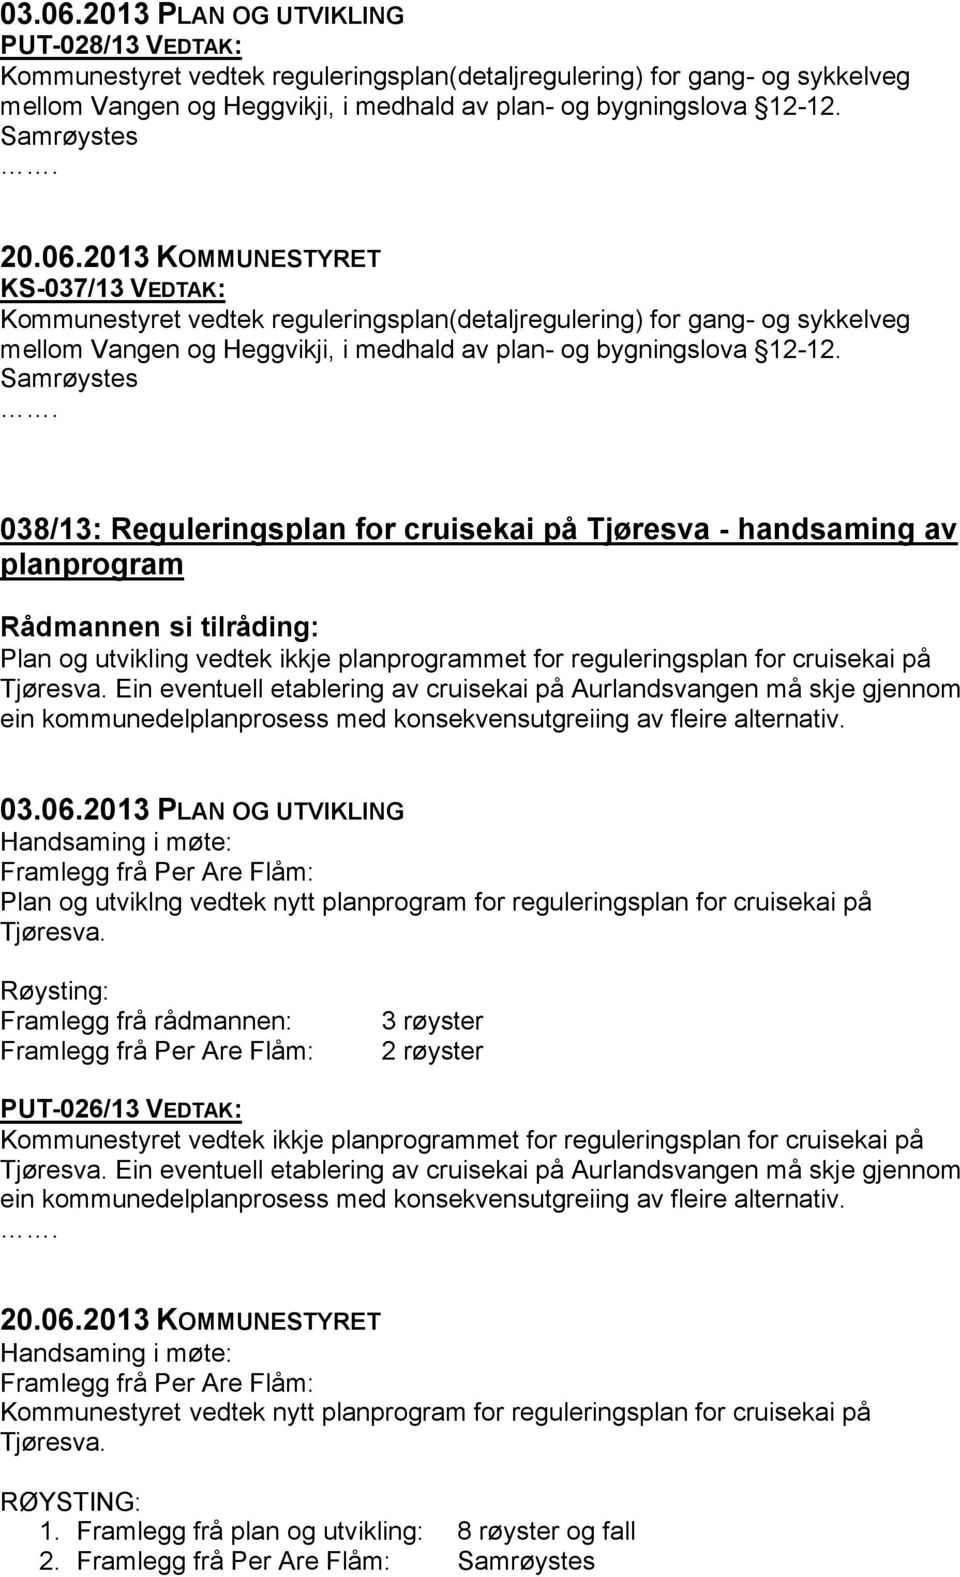 038/13: Reguleringsplan for cruisekai på Tjøresva - handsaming av planprogram Plan og utvikling vedtek ikkje planprogrammet for reguleringsplan for cruisekai på Tjøresva.